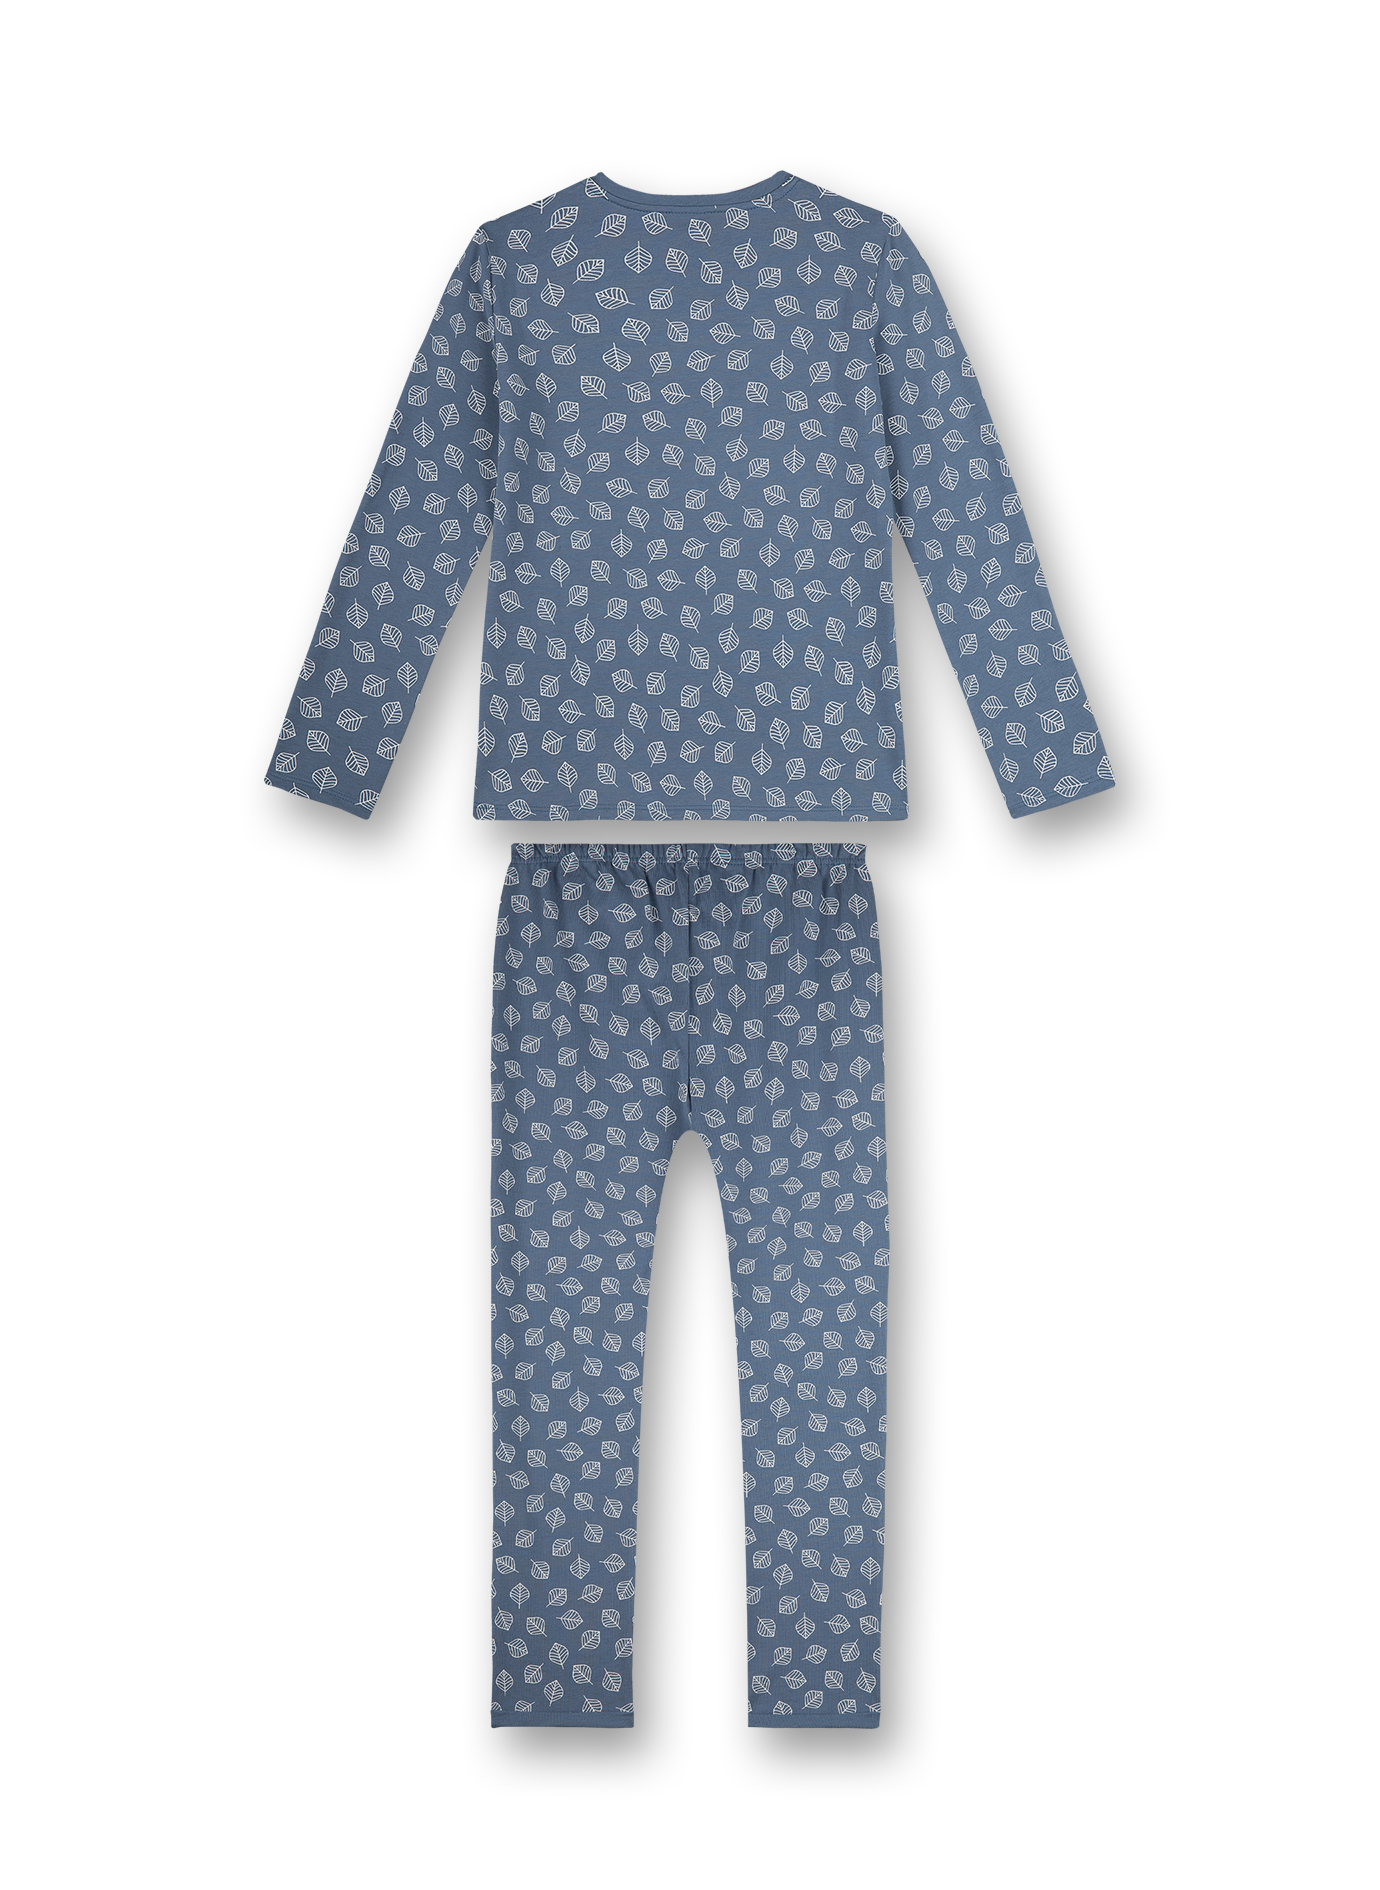 Mädchen-Schlafanzug Blau Ethno